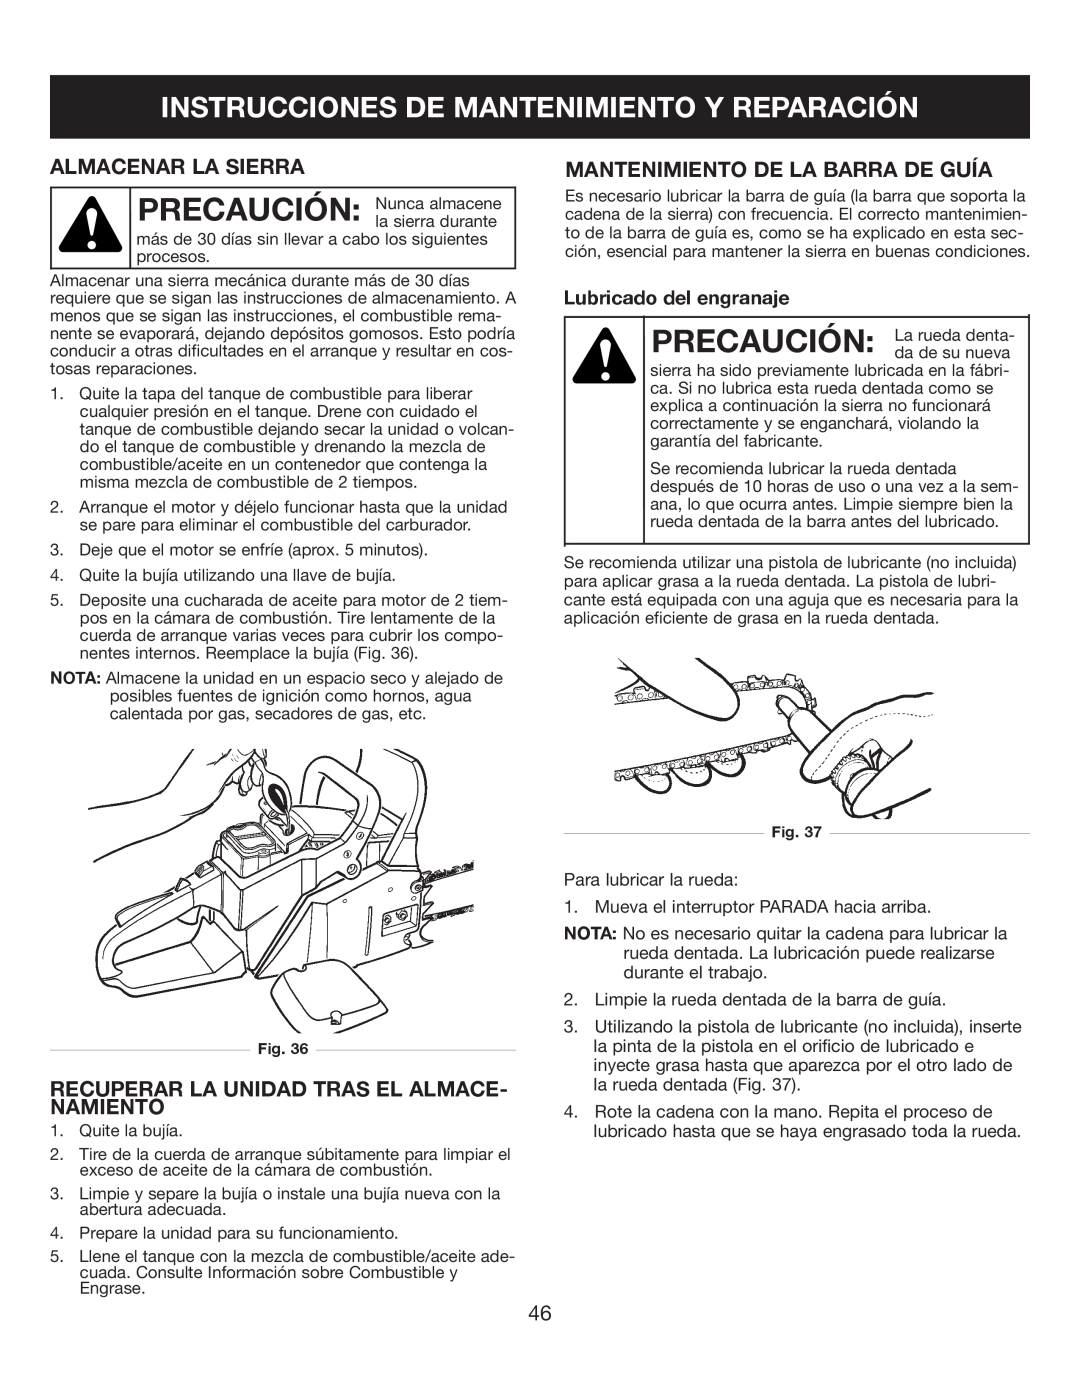 Sears 316.35084 manual Instrucciones De Mantenimiento Y Reparación, Almacenar La Sierra, Mantenimiento De La Barra De Guía 